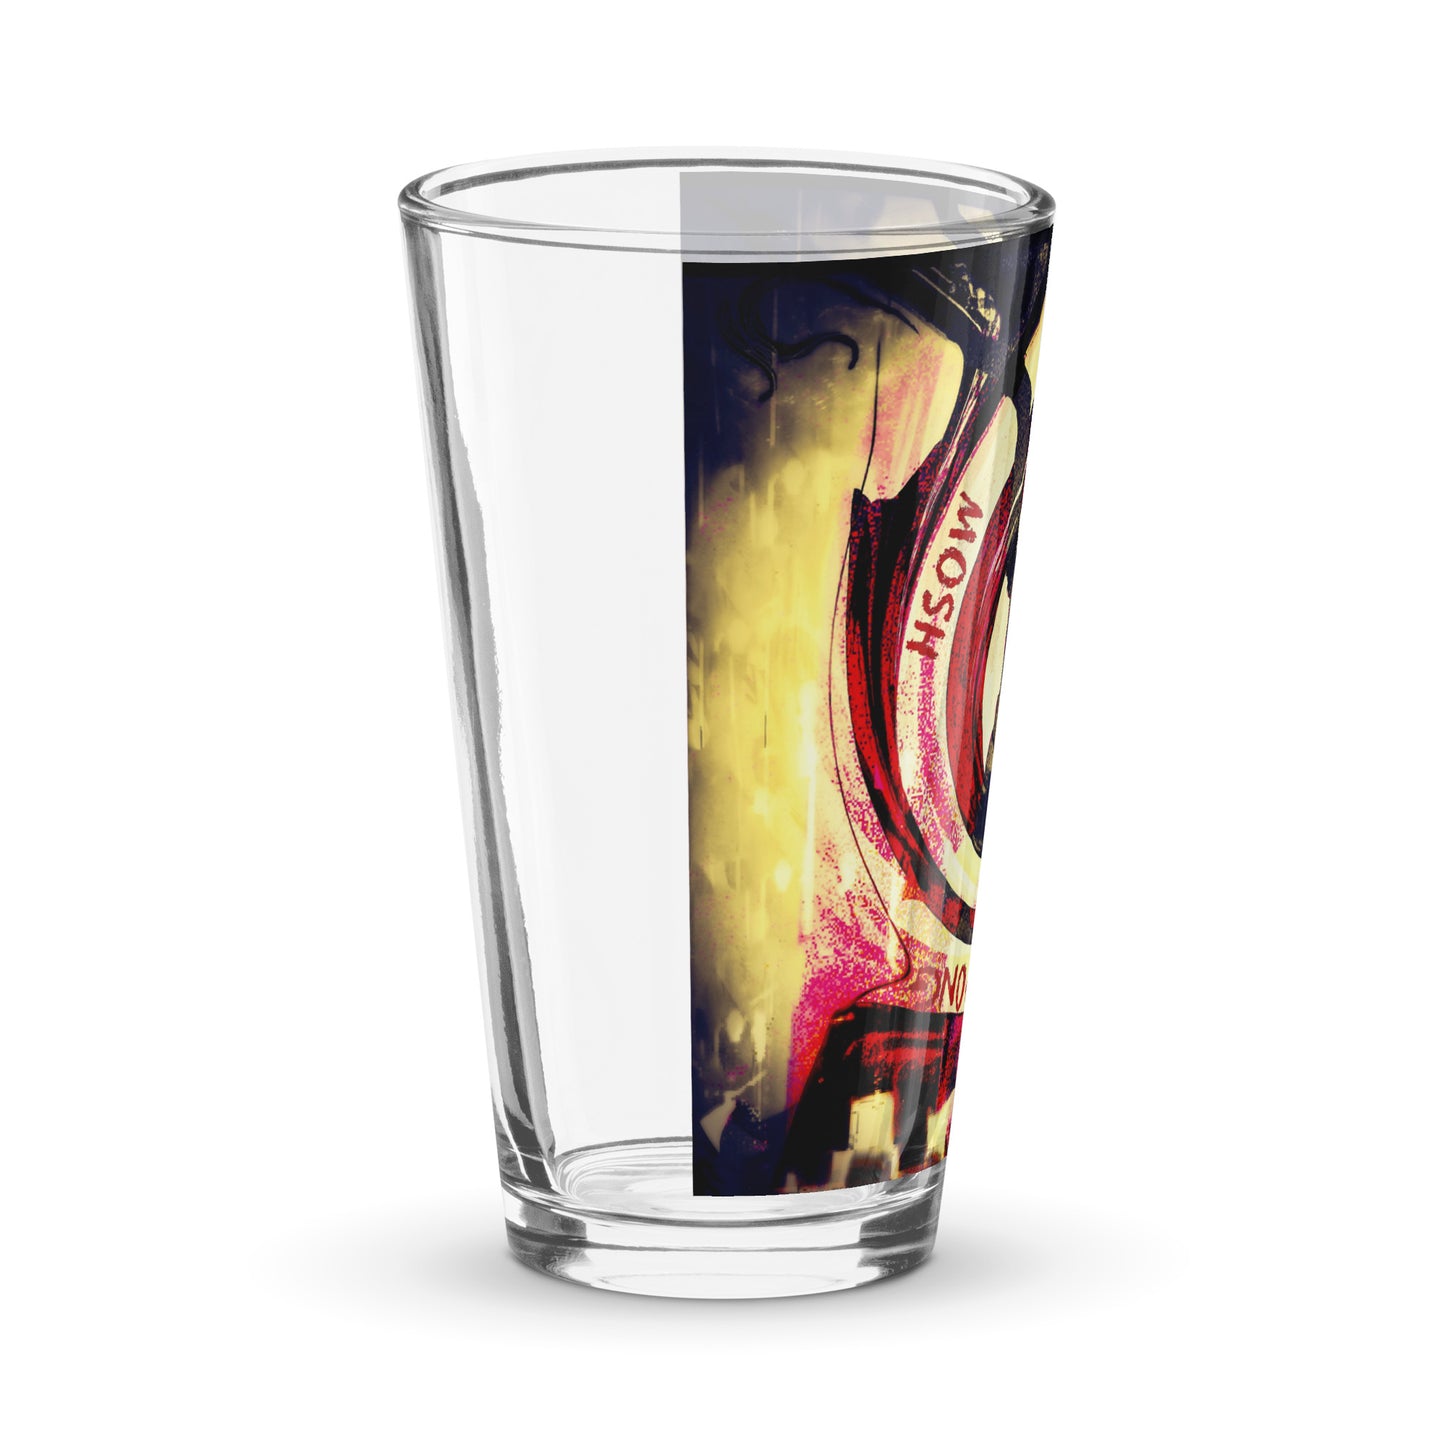 AJOKETOTELLTOU - Shaker pint glass